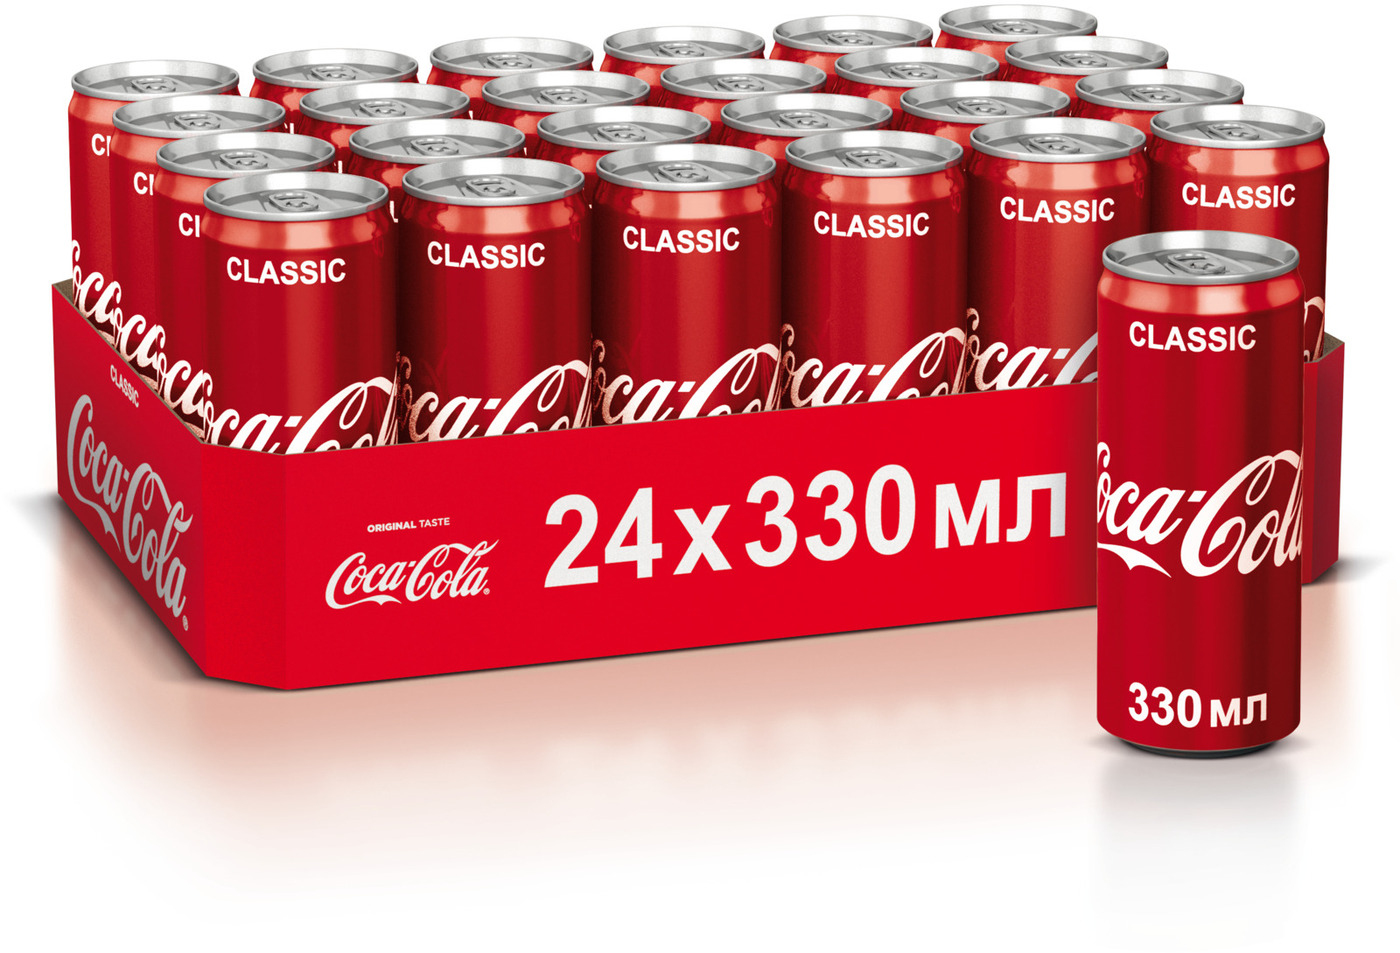 Упак 33. Кола жб 0.33. Кола жб 0.33 упаковка. Газированный напиток Кока кола Классик ж/б 330мл. Напиток газированный Кока-кола 0,33л ж/б.